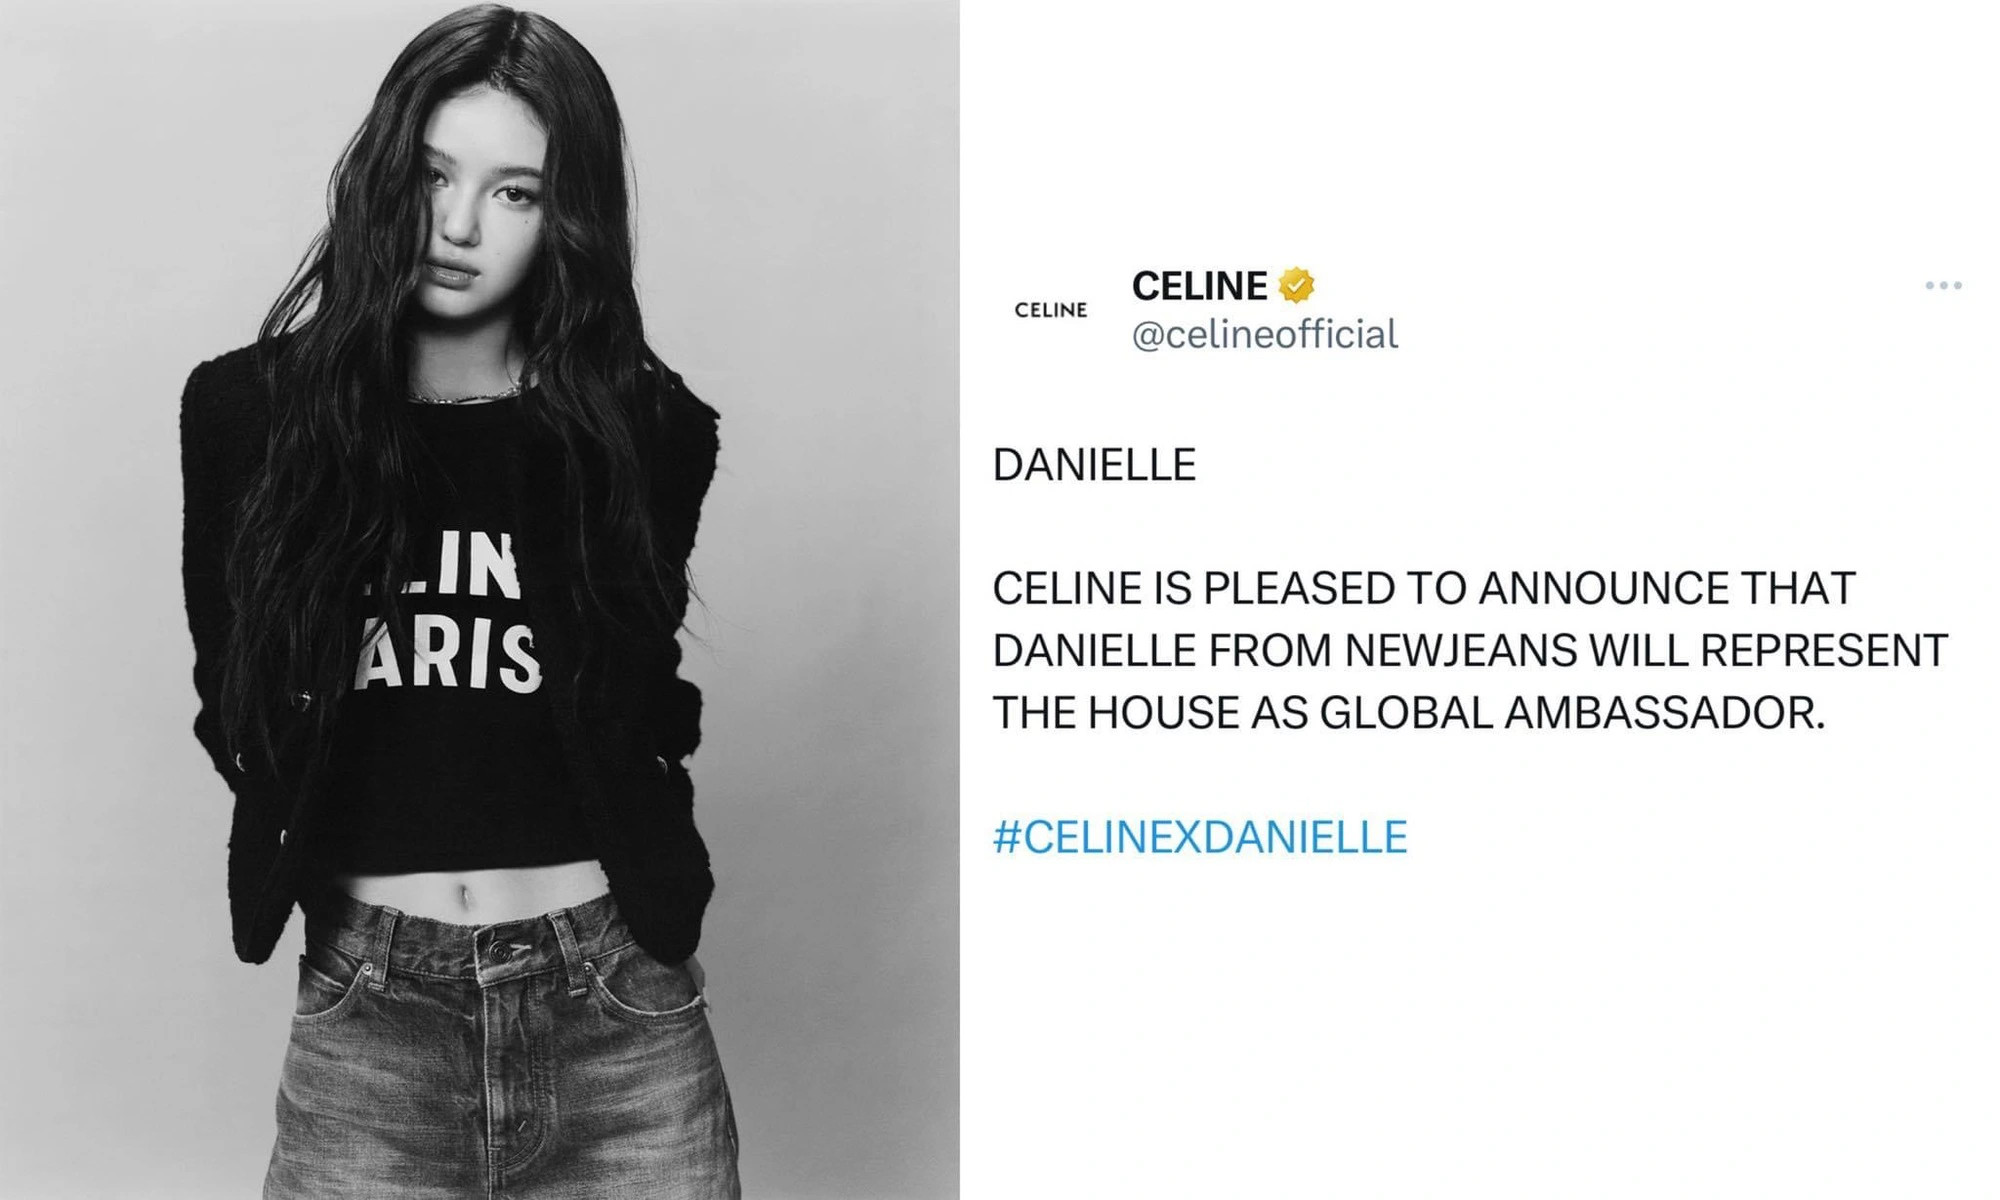 Mới đây, Danielle đã xuất hiện trên các nền tảng mạng xã hội của CELINE. Cô nàng được tuyên là đại sứ toàn cầu, chức vị cao nhất này trước đây chỉ mình Lisa có được.